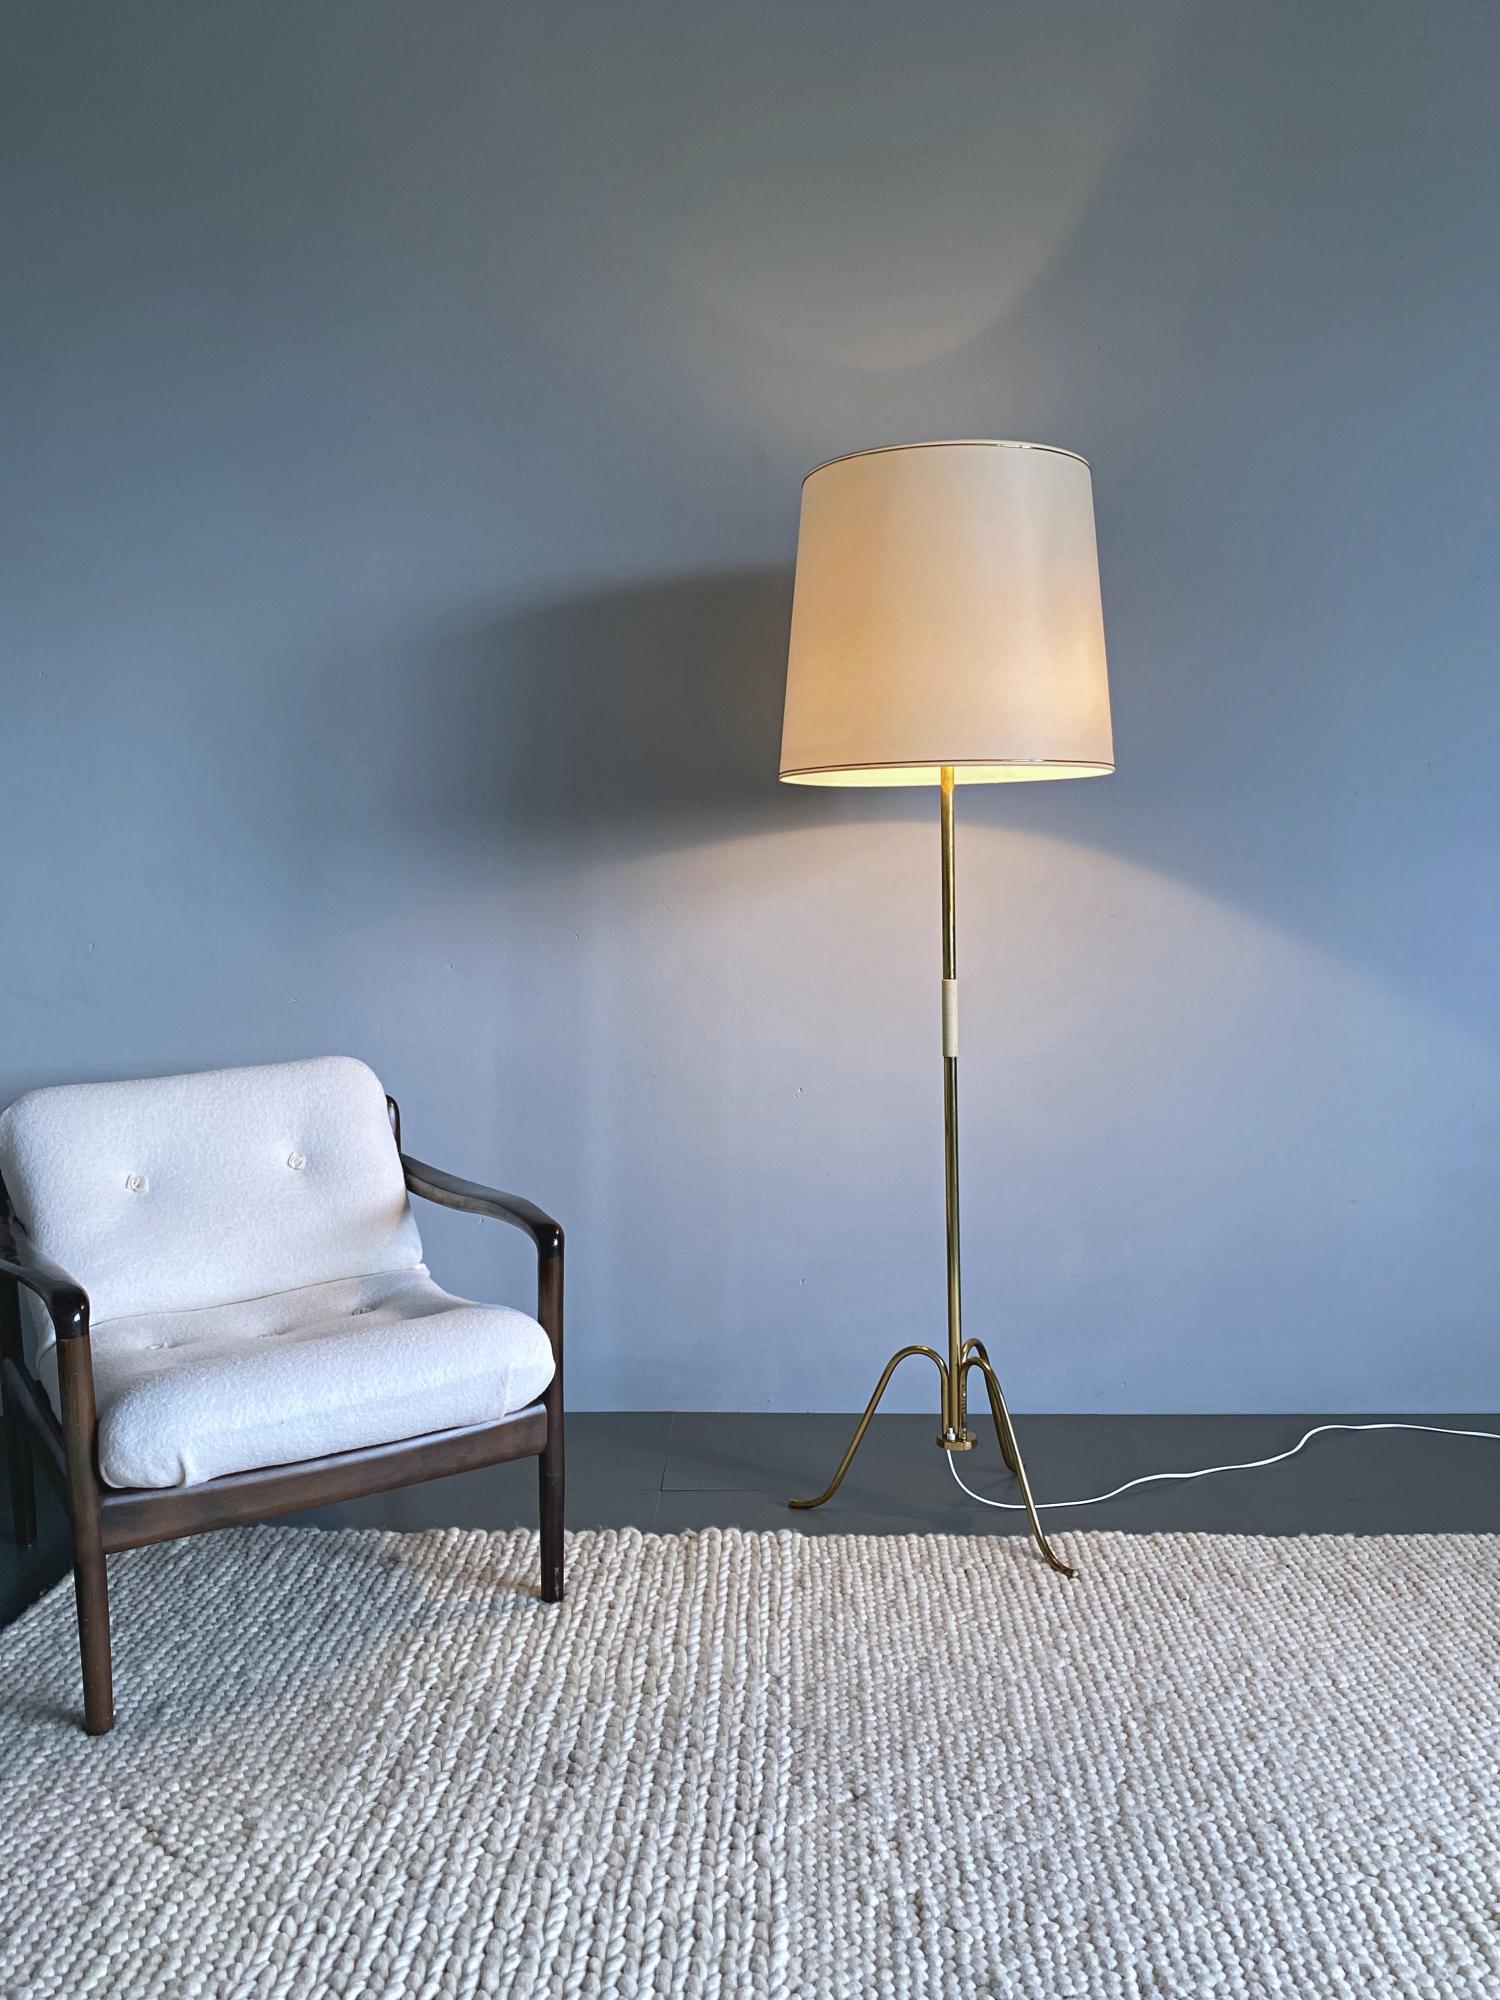 Schlichte und elegante Stehleuchte aus der Mitte des Jahrhunderts von J.T. Kalmar, hergestellt im Wien der 50er Jahre. Die Lampe ist aus Messingrohr gefertigt und hat einen polierten Messing-Stativfuß. Der große Schirm sorgt für ein gleichmäßiges,